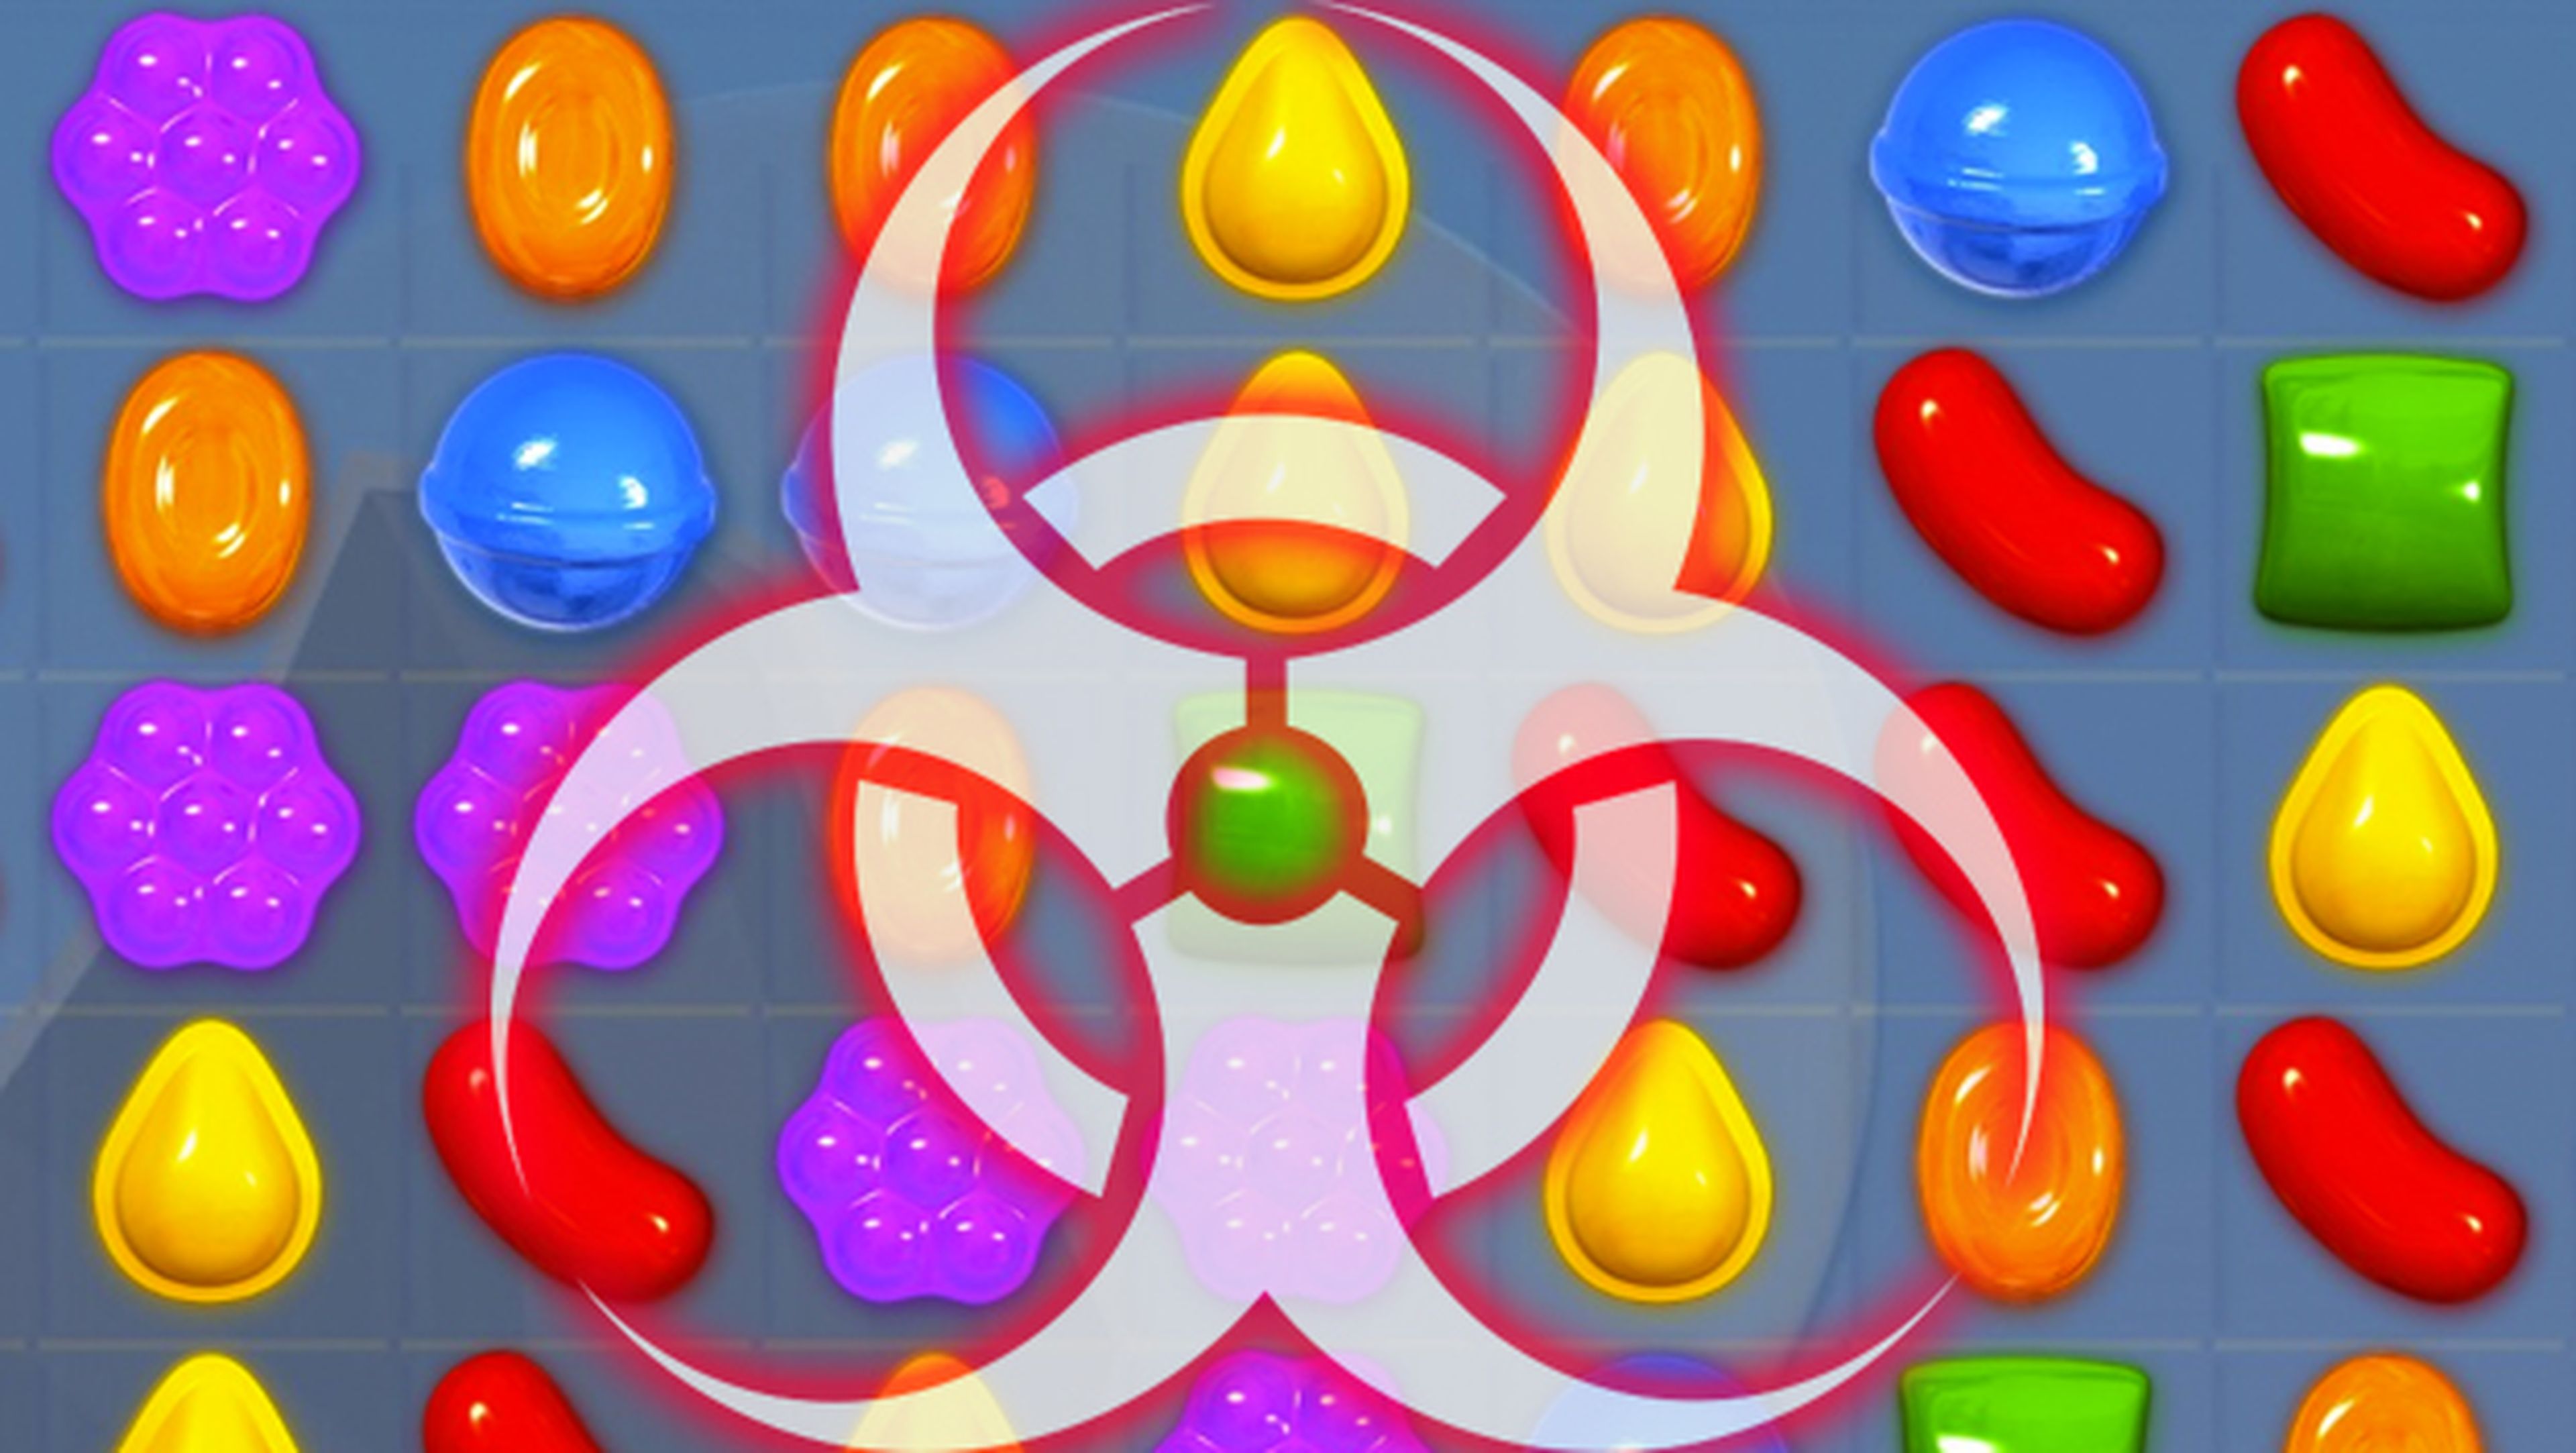 Un potente malware troyano infecta Candy Crush en Google Play